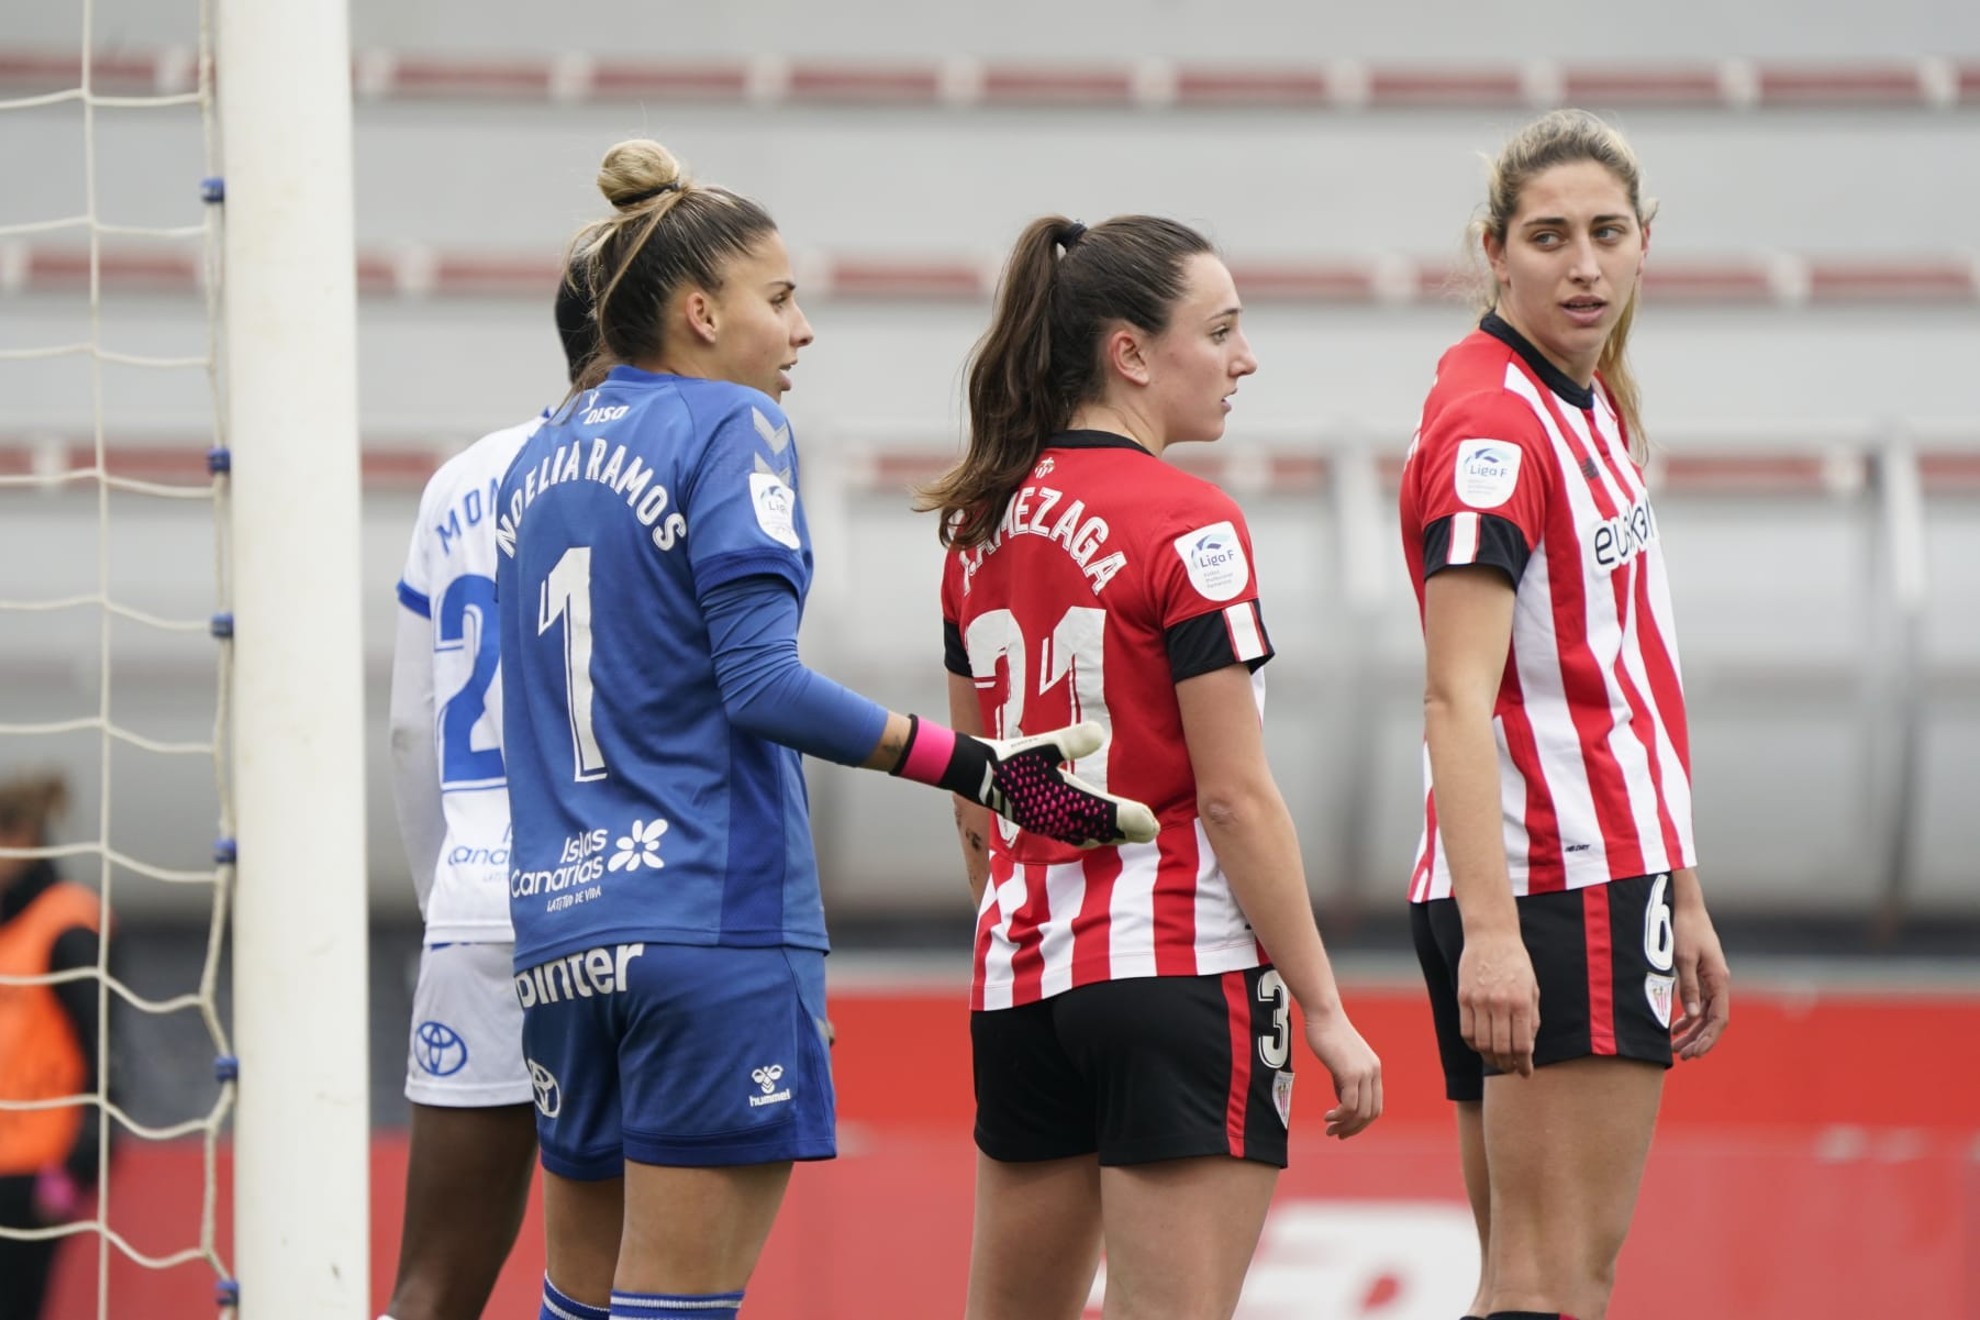 Noelia Ramos, Jone Amezaga y Oihane Valdezate durante el partido en Lezama / Athletic Club